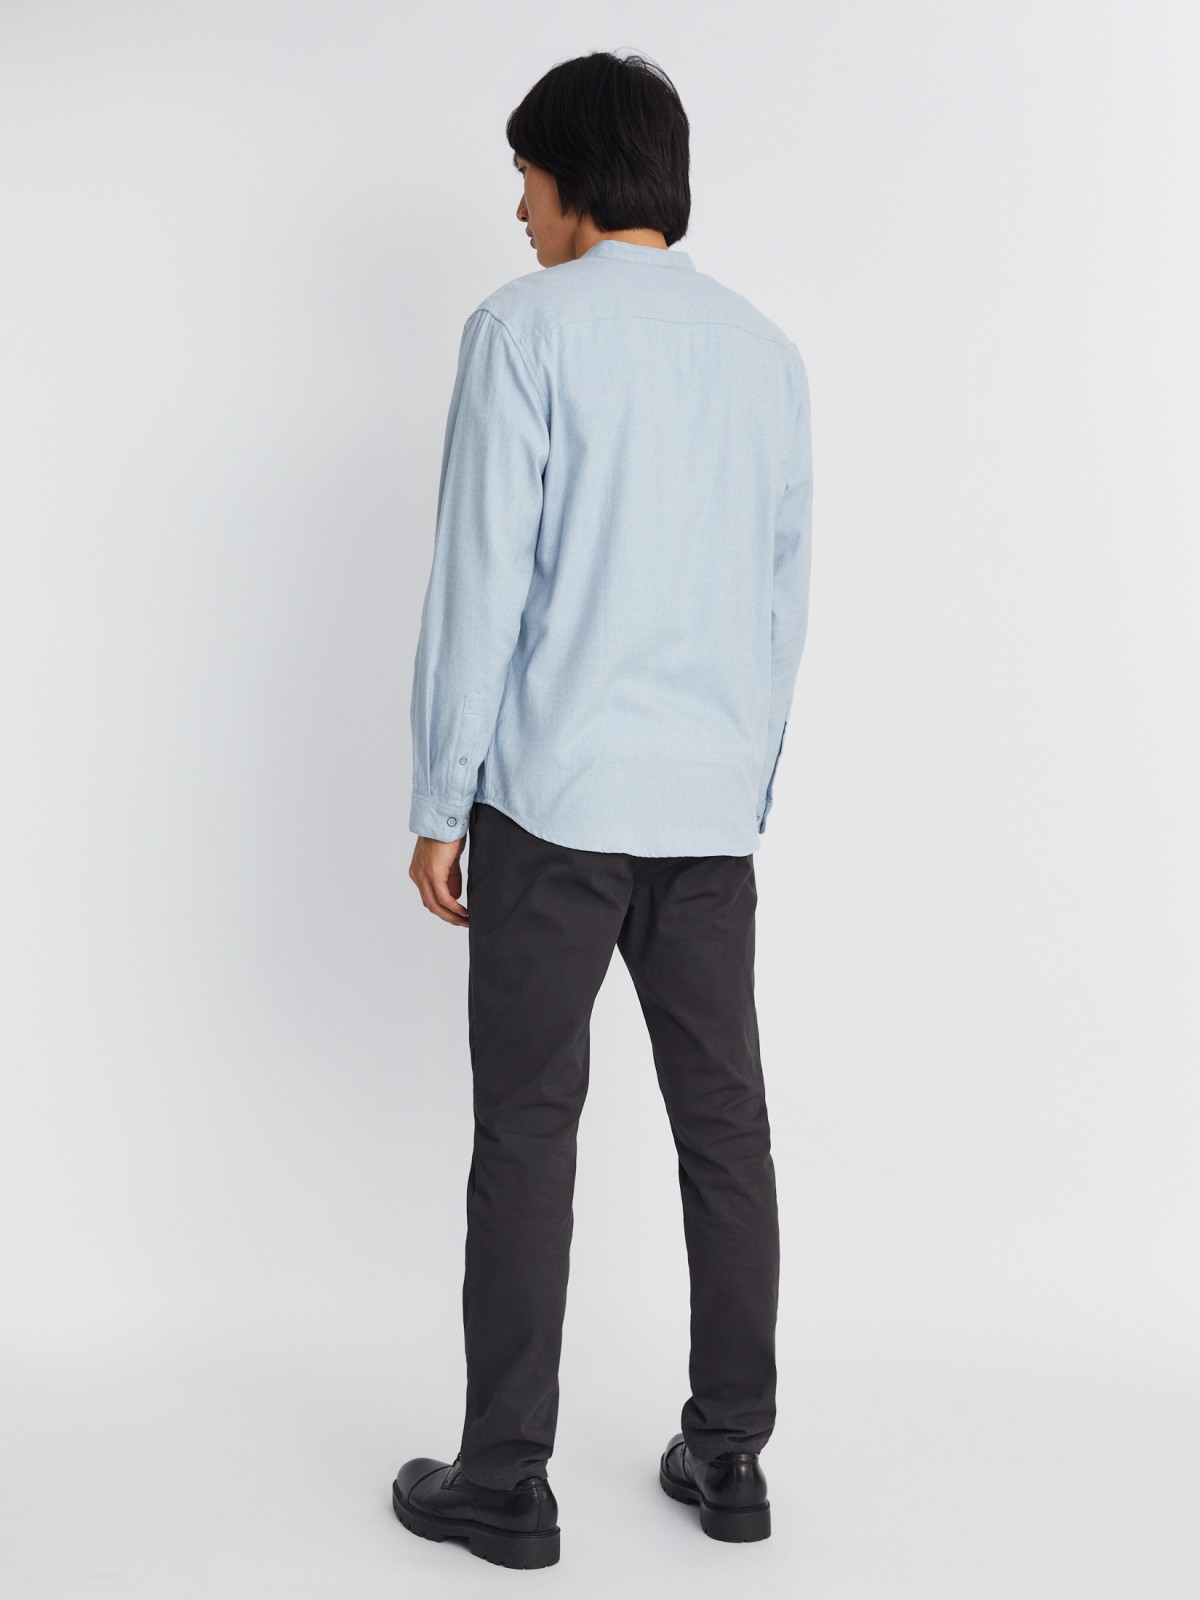 Фланелевая рубашка из хлопка с воротником-стойкой и длинным рукавом zolla 013332162013, цвет светло-голубой, размер S - фото 6